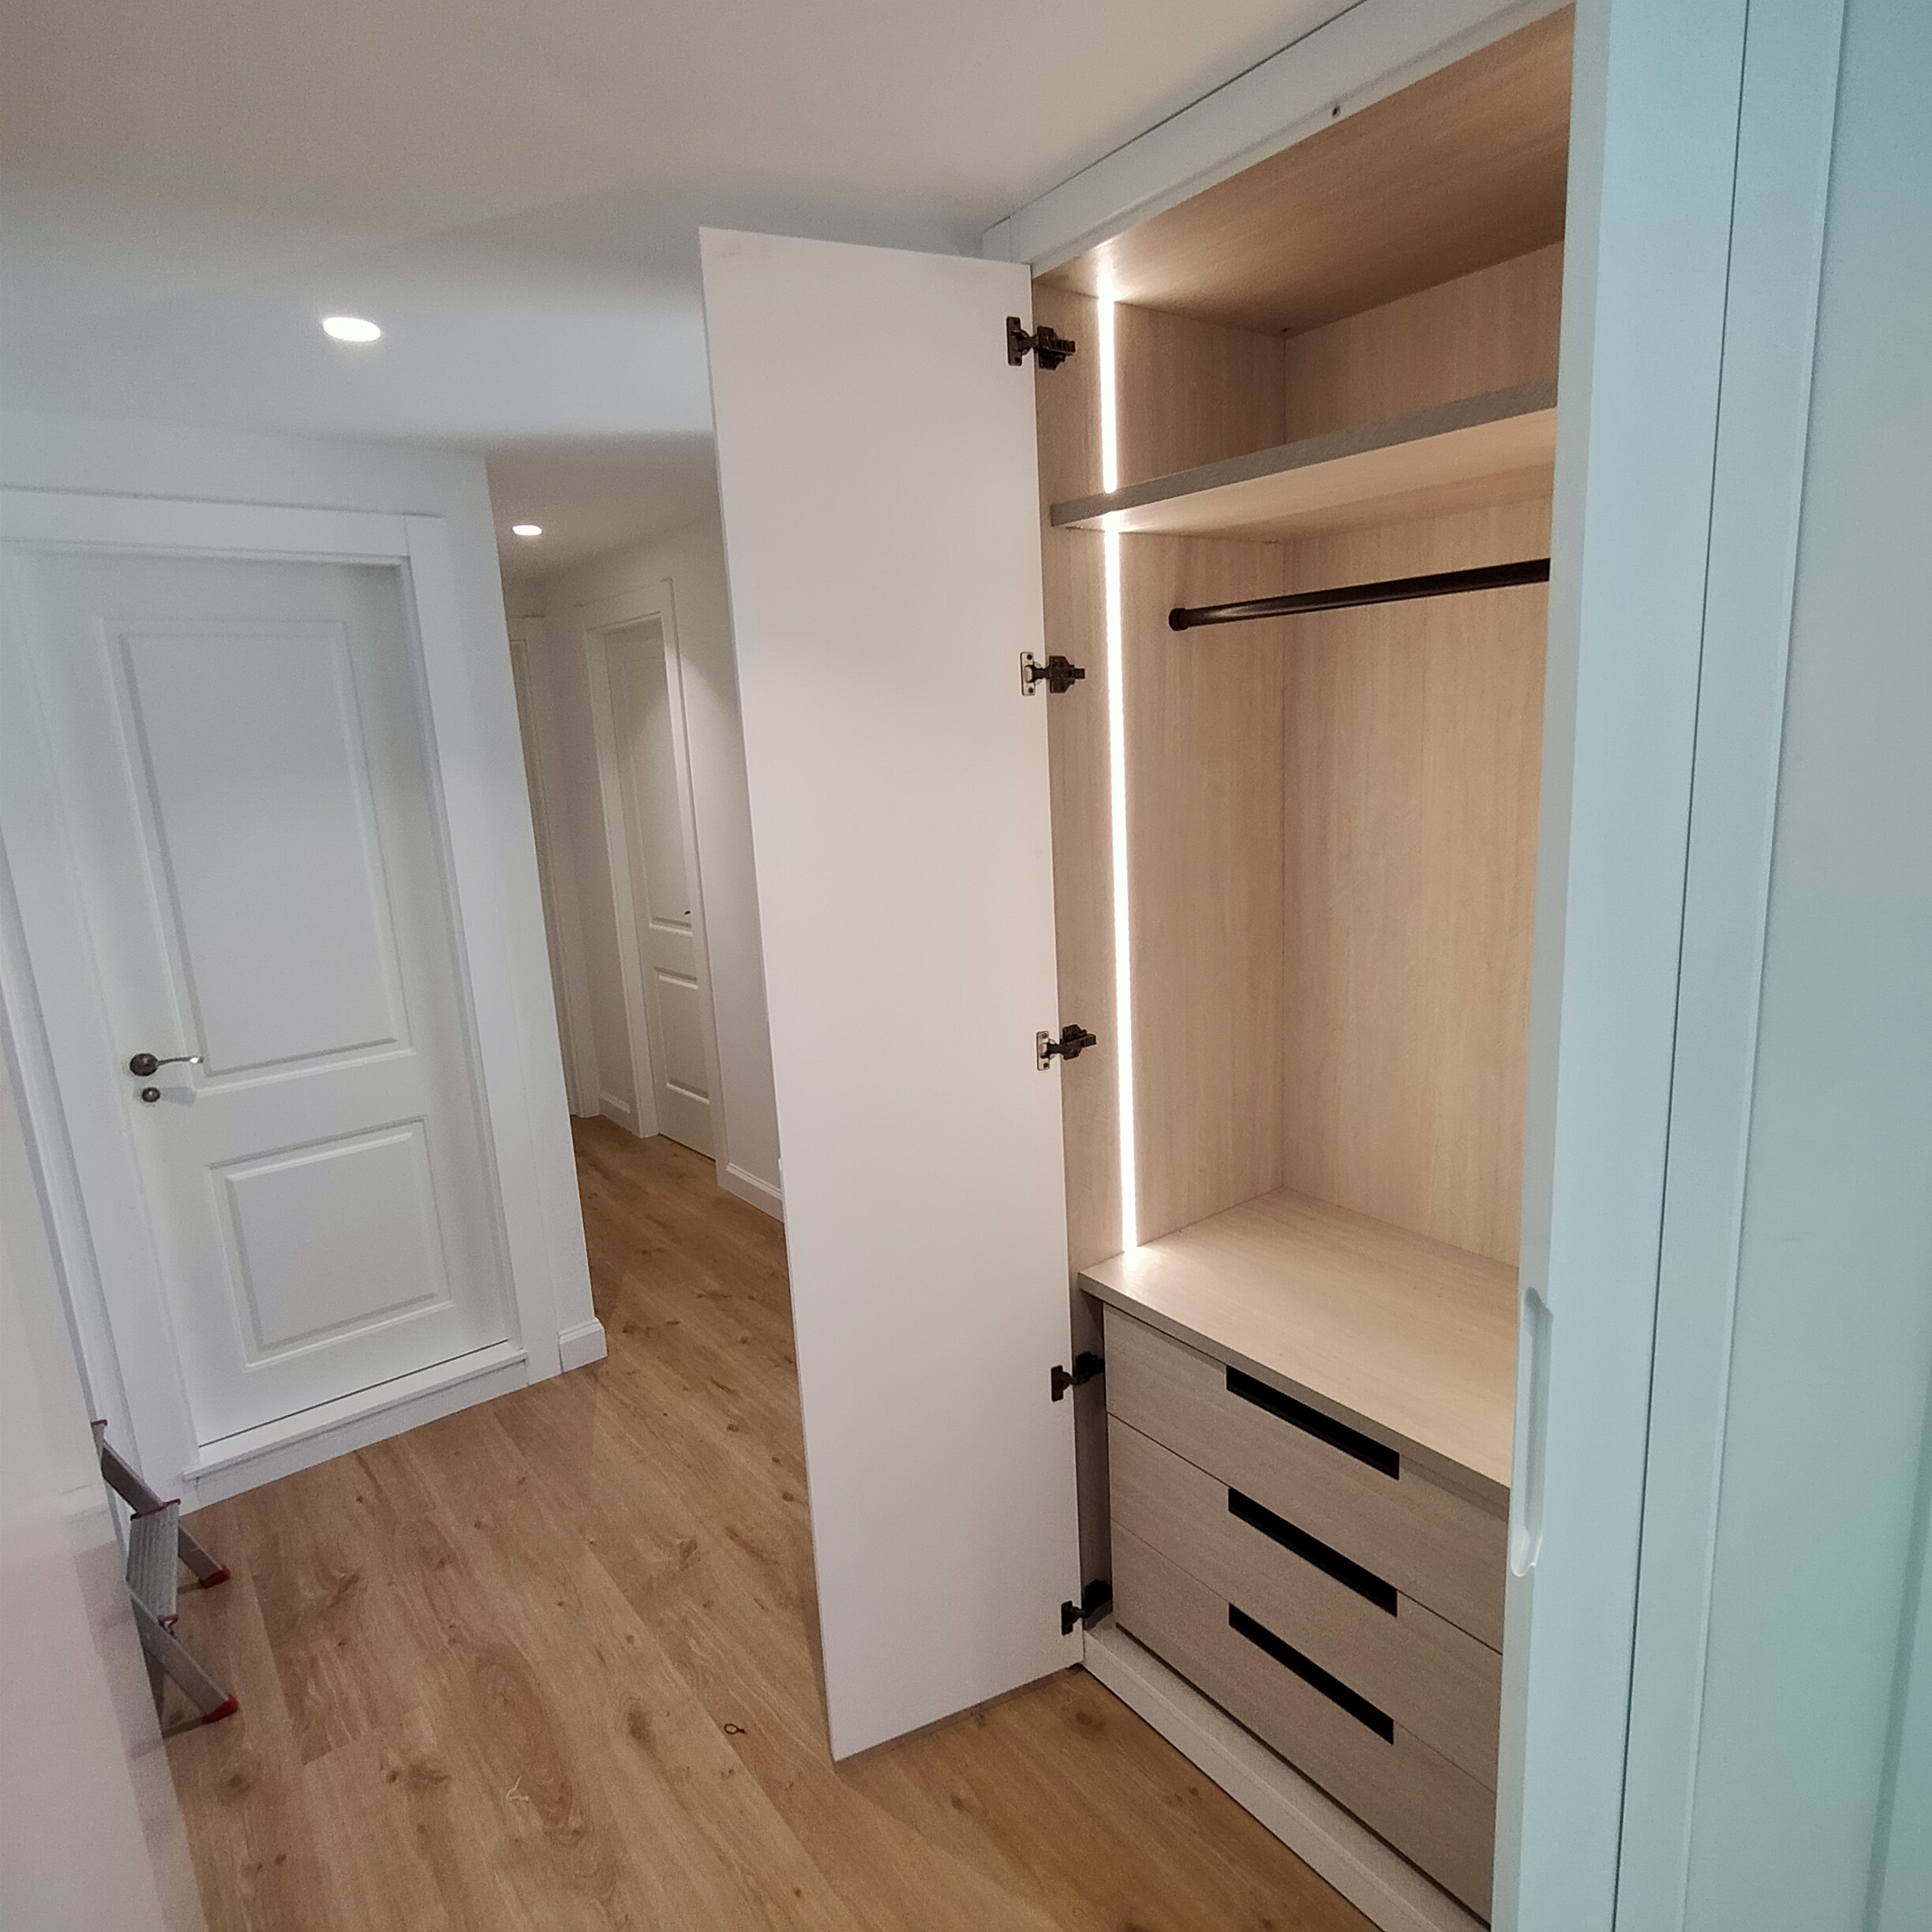 Diseño de armarios: configurar un armario empotrado